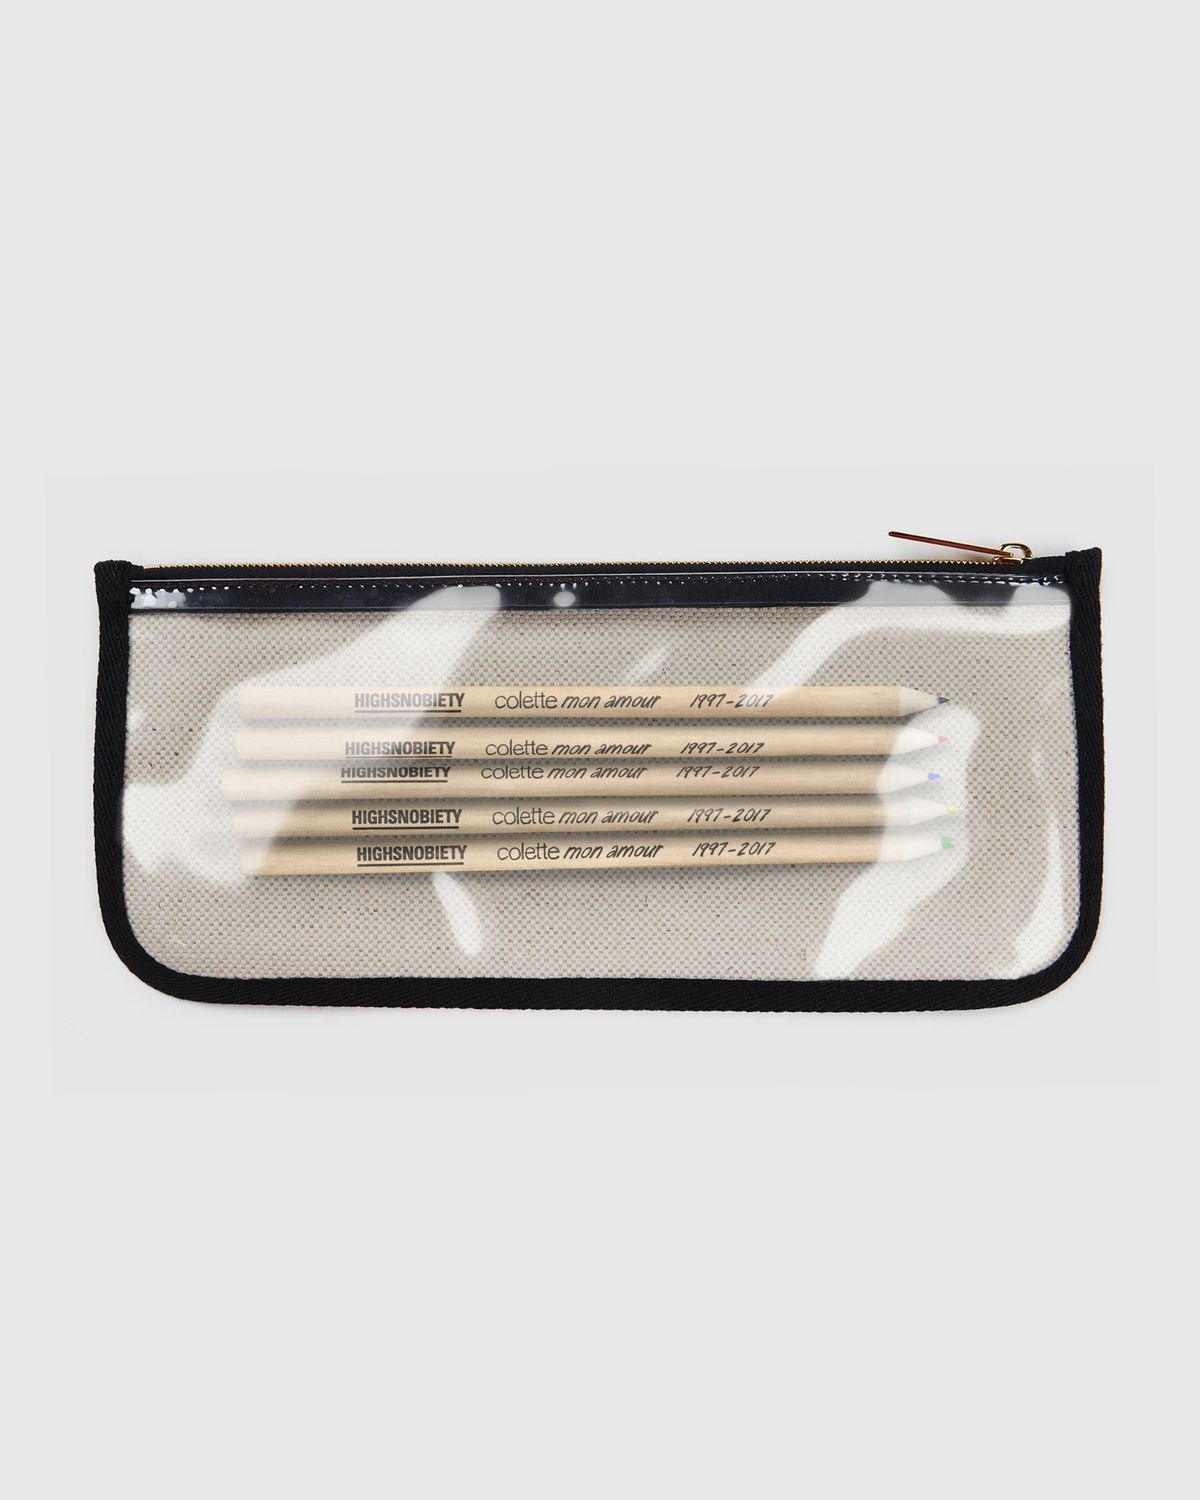 Colette Mon Amour – KAWS Beige Pencil Case